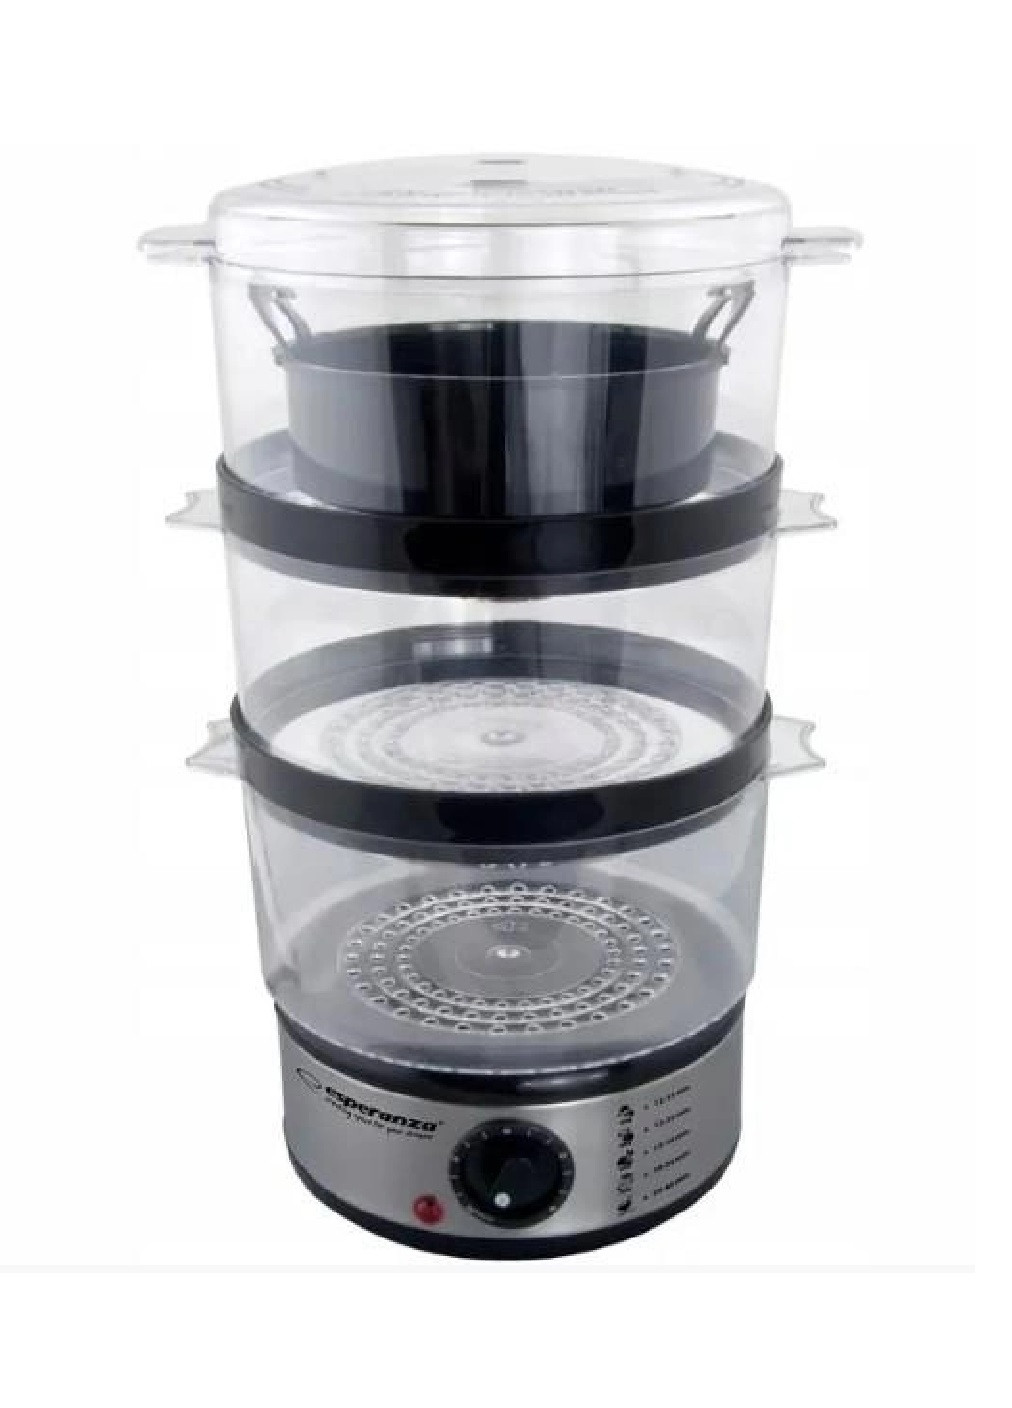 Пароварка кухонная аппарат машинка прибор для приготовления еды блюд на пару компактная портативная 400 Вт (475165-Prob) Unbranded (262596924)